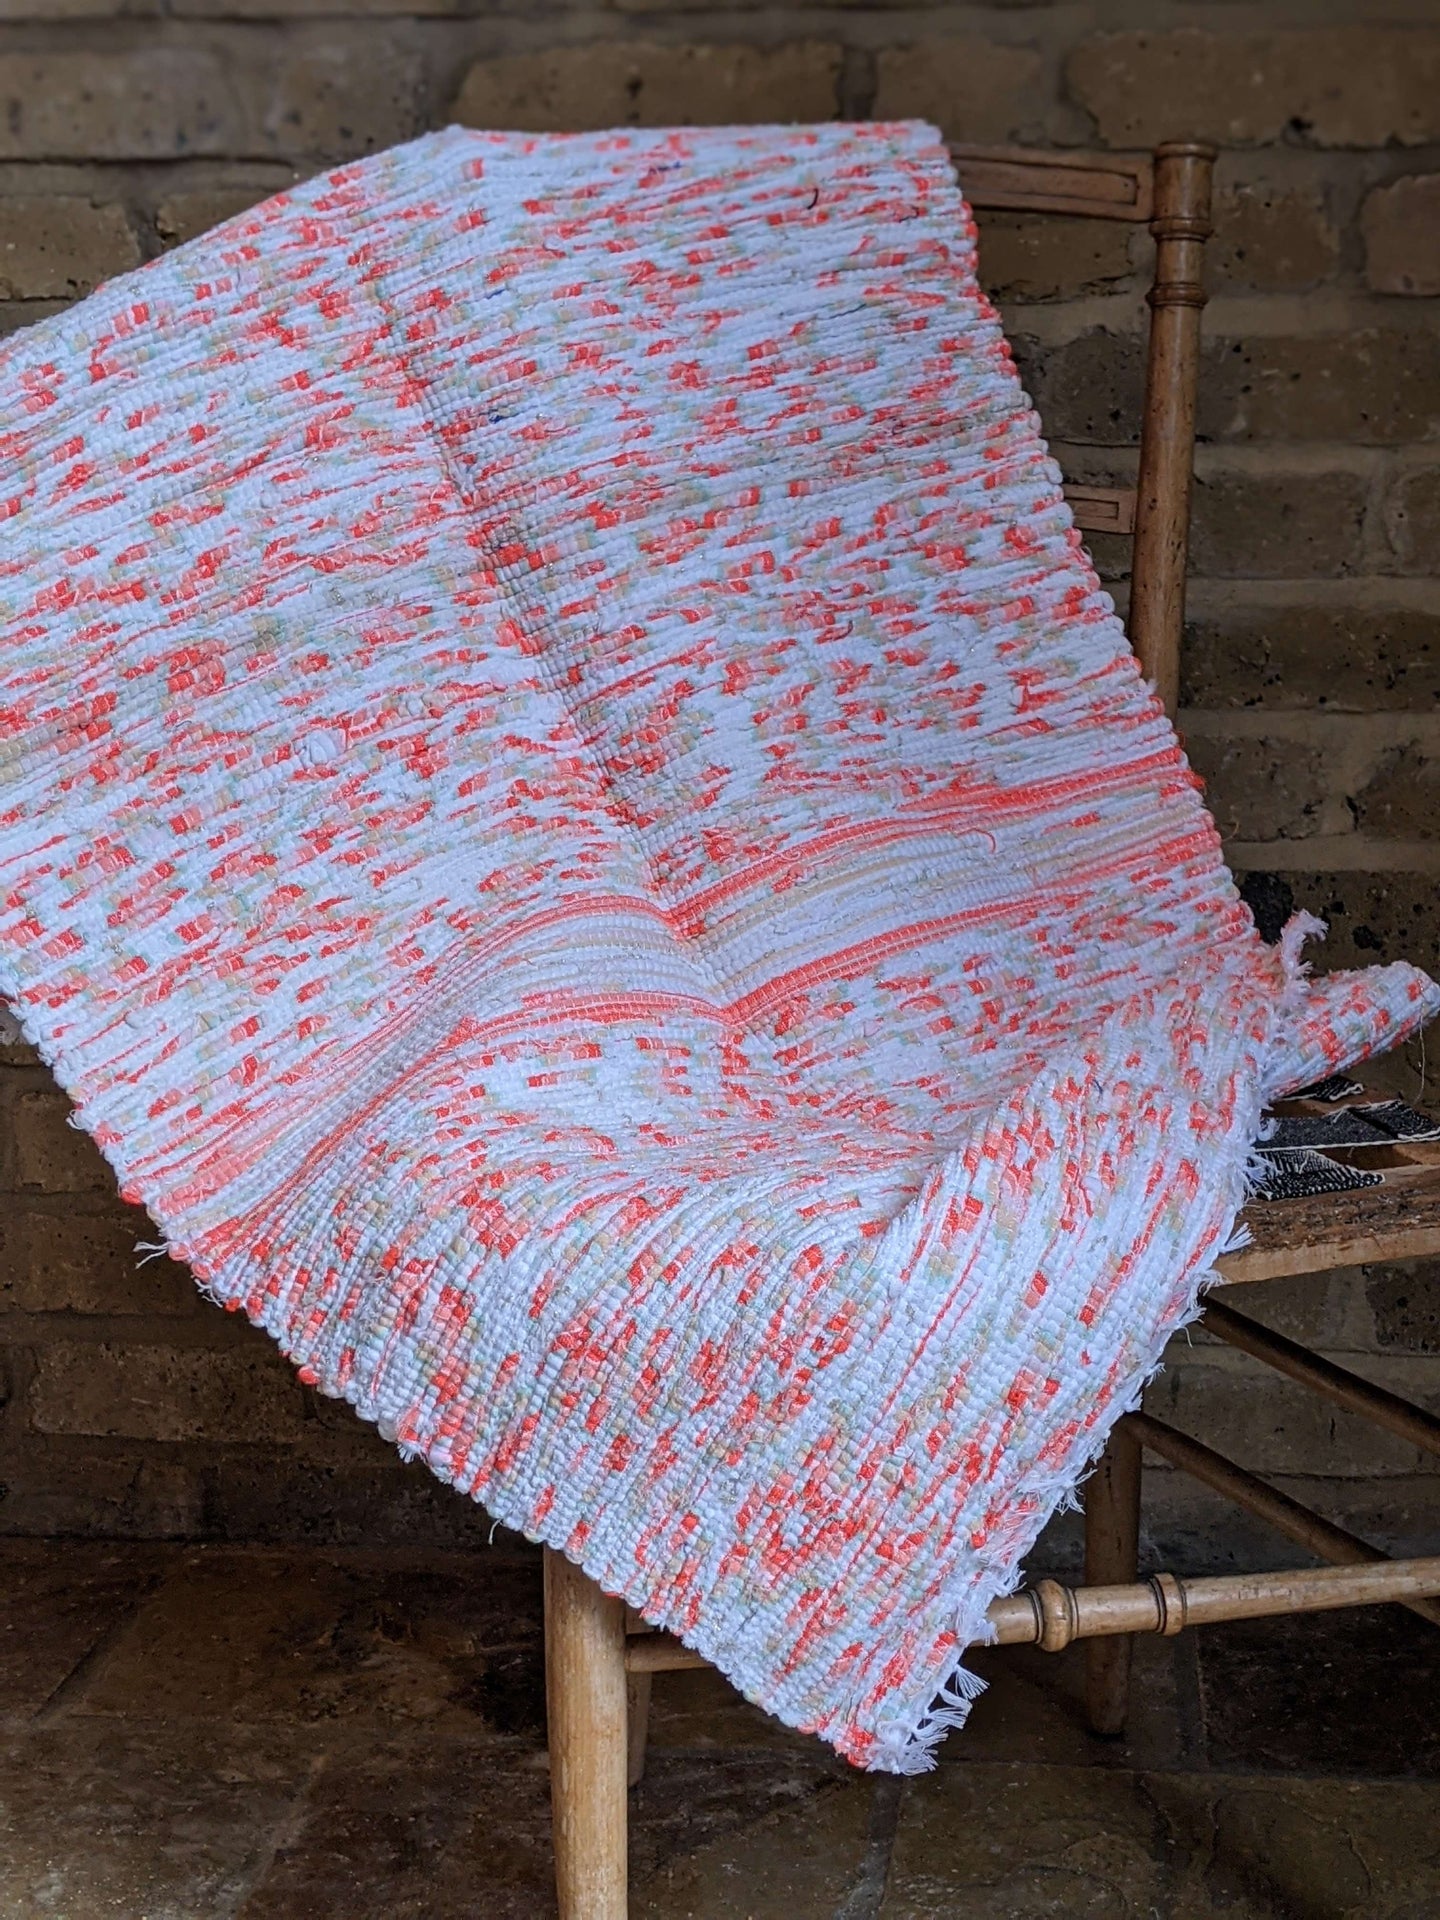 Handwoven Orange white pattern cotton rug on chair